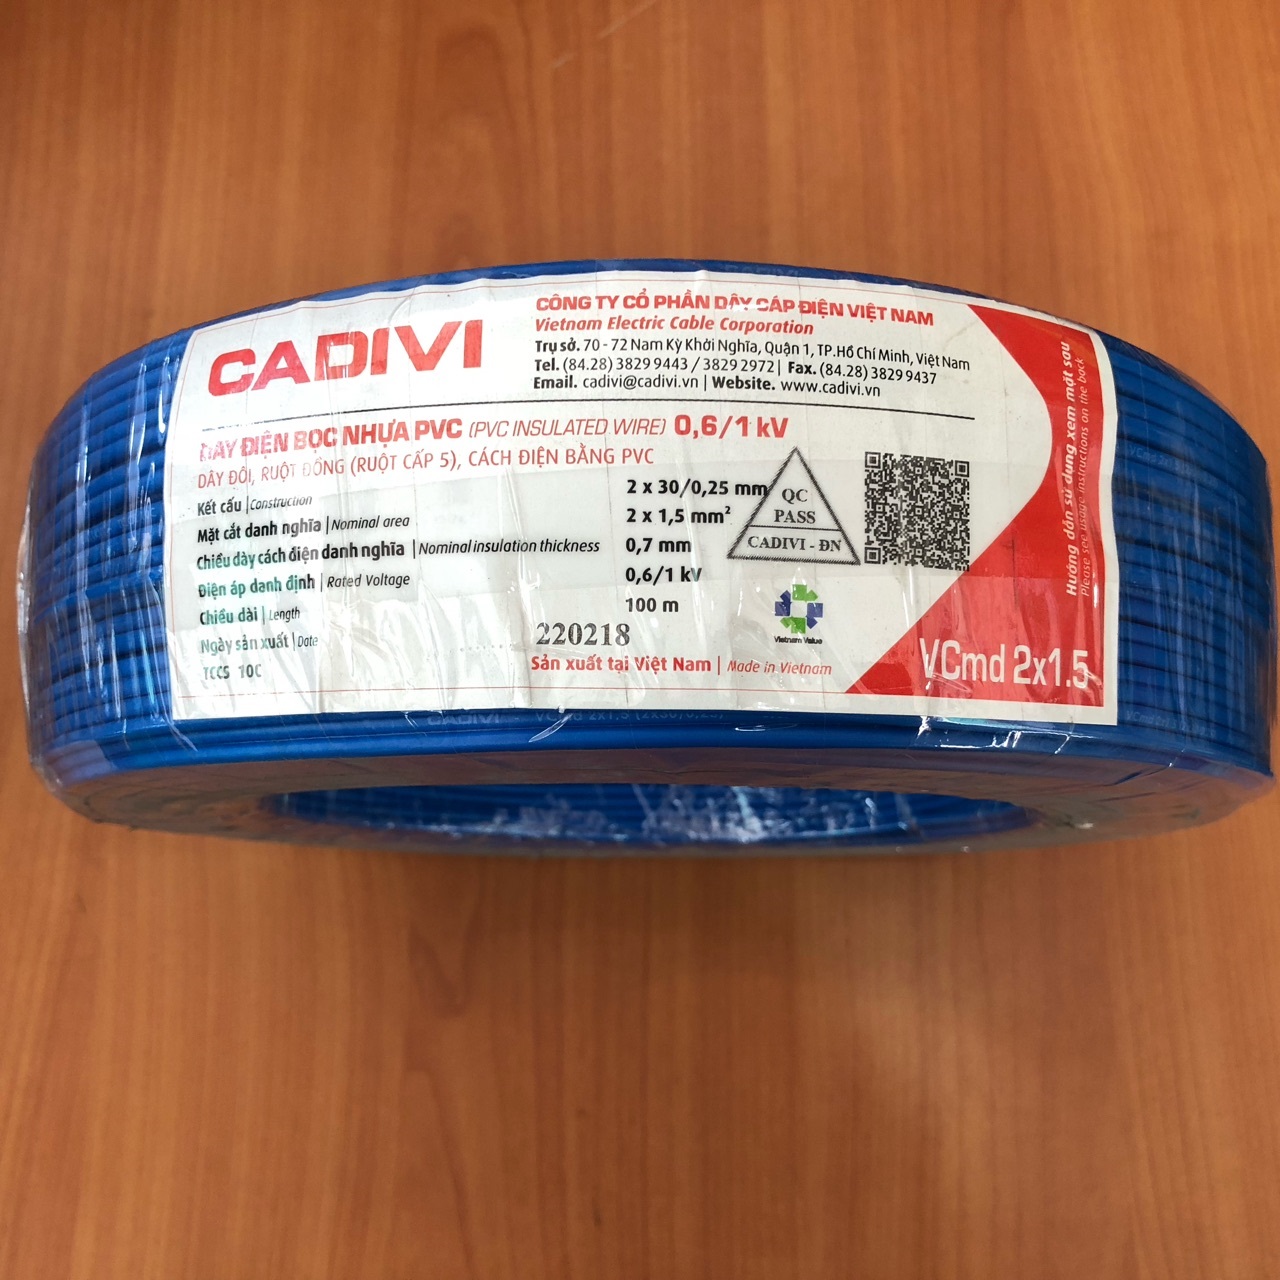 Dây cáp điện đôi mềm (dây dẹp) Vcmd Cadivi 2x1.5 màu xanh, ruột đồng bọc nhựa PVC, cuộn 100 mét, giá tính theo mét